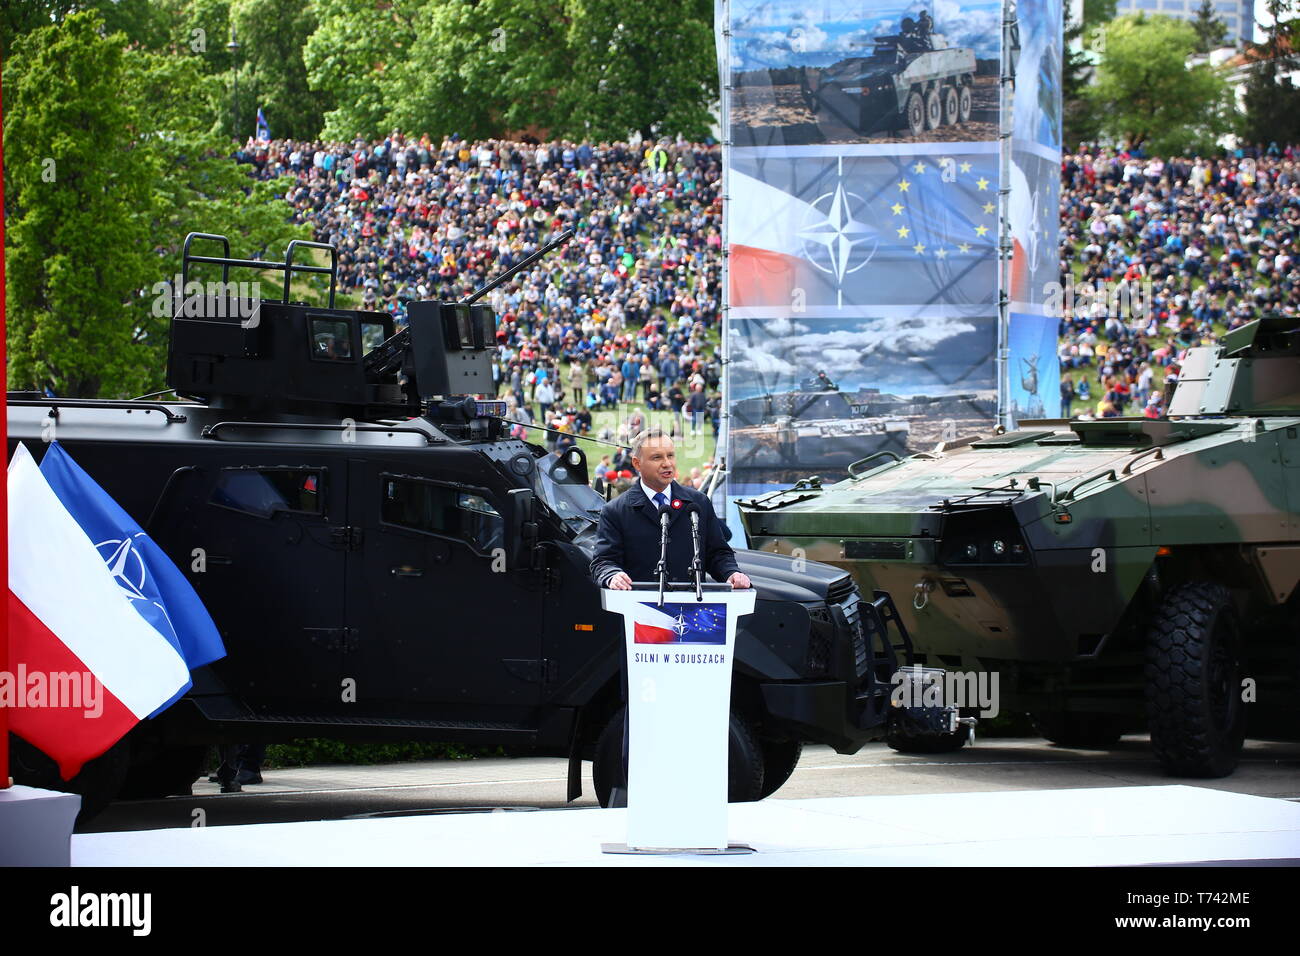 Polen: Präsident Andrzej Duda hält Rede während der Tag der Verfassung. Stockfoto